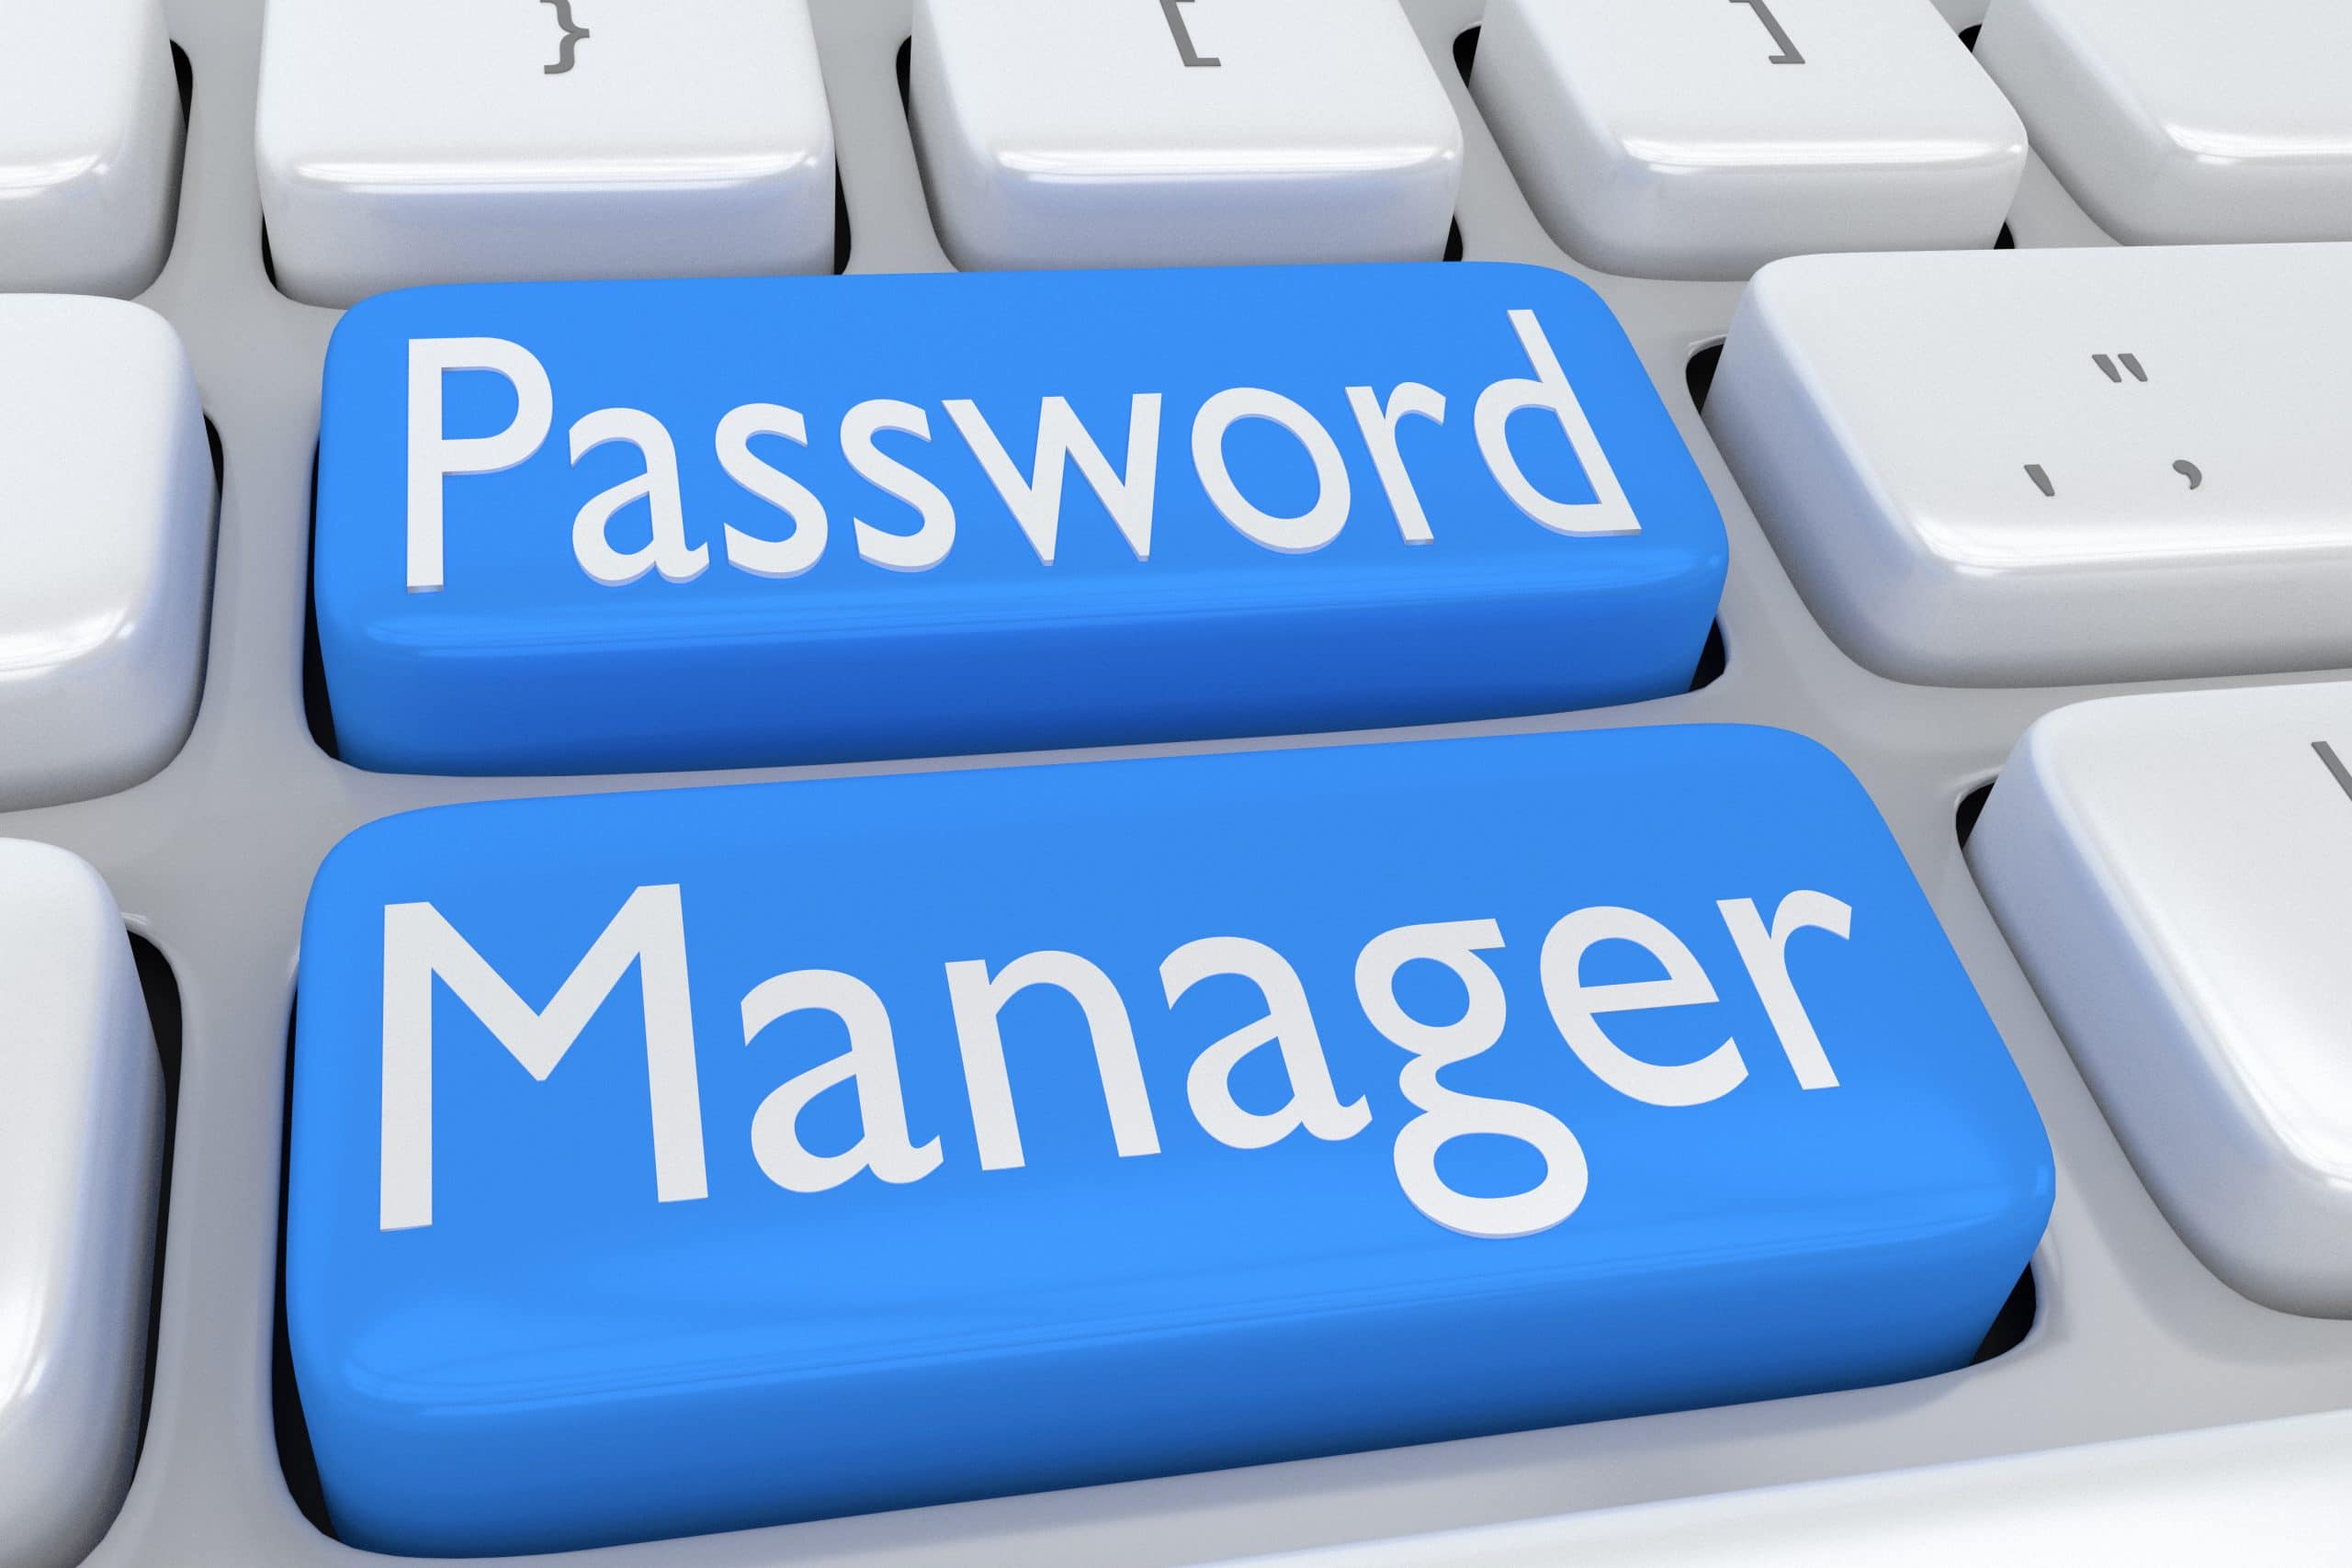 Passwortmanager – Jährliche Kosten, Tracking und Abhängigkeit